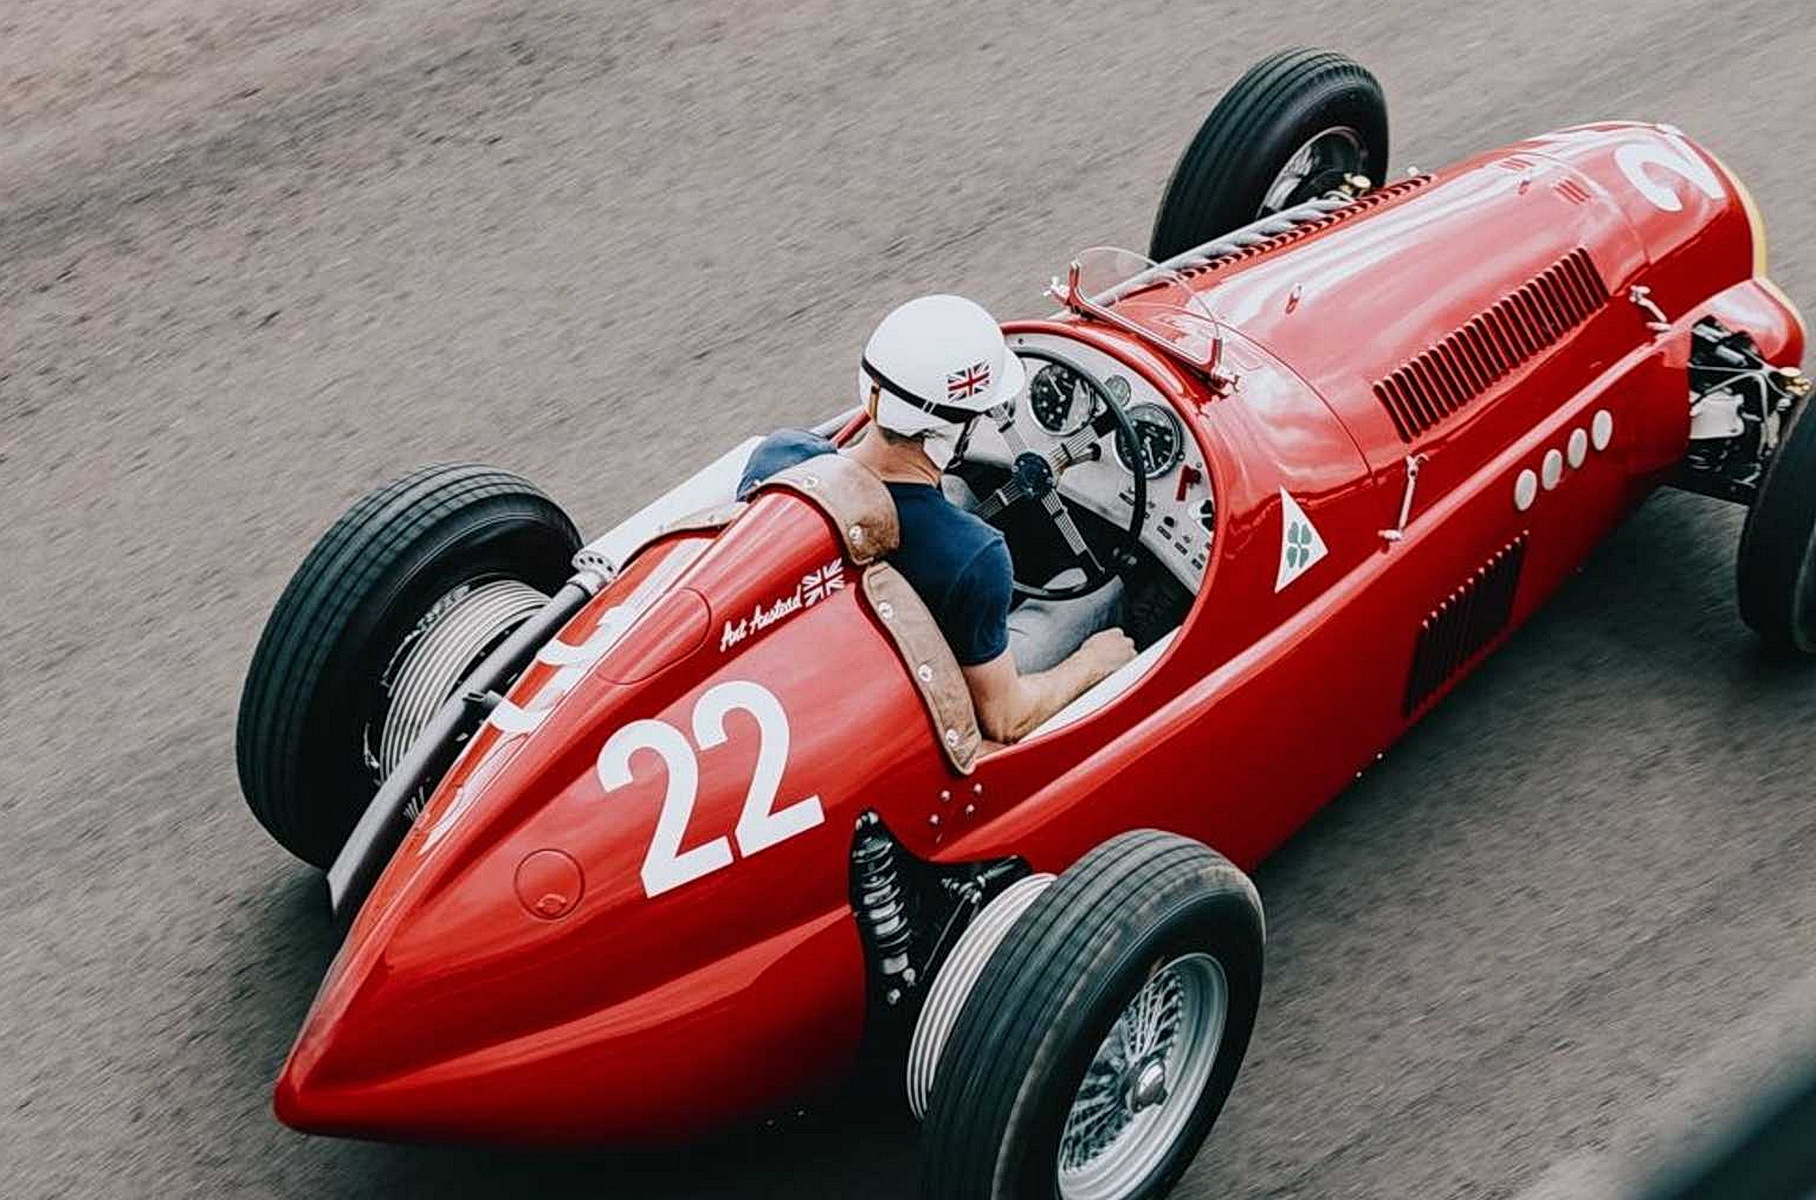 Из старой Mazda сделали реплику легендарного болида Формулы-1